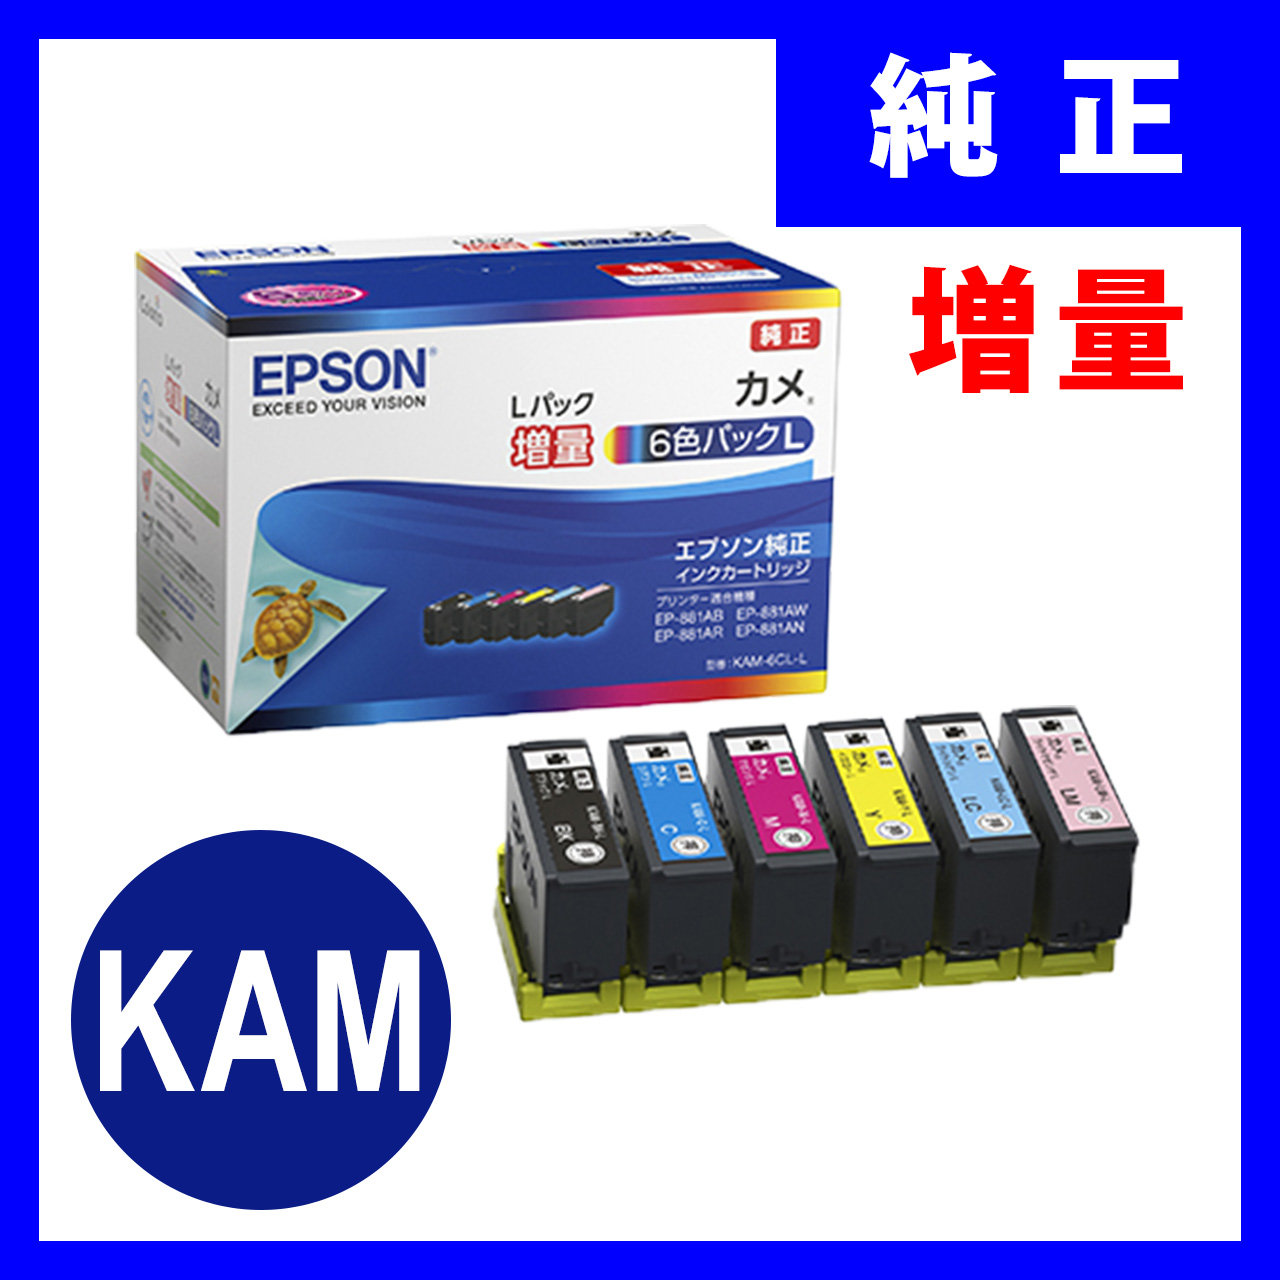 増量新品 エプソン インク KAM-6CL-L カメ 増量 セット EPSON